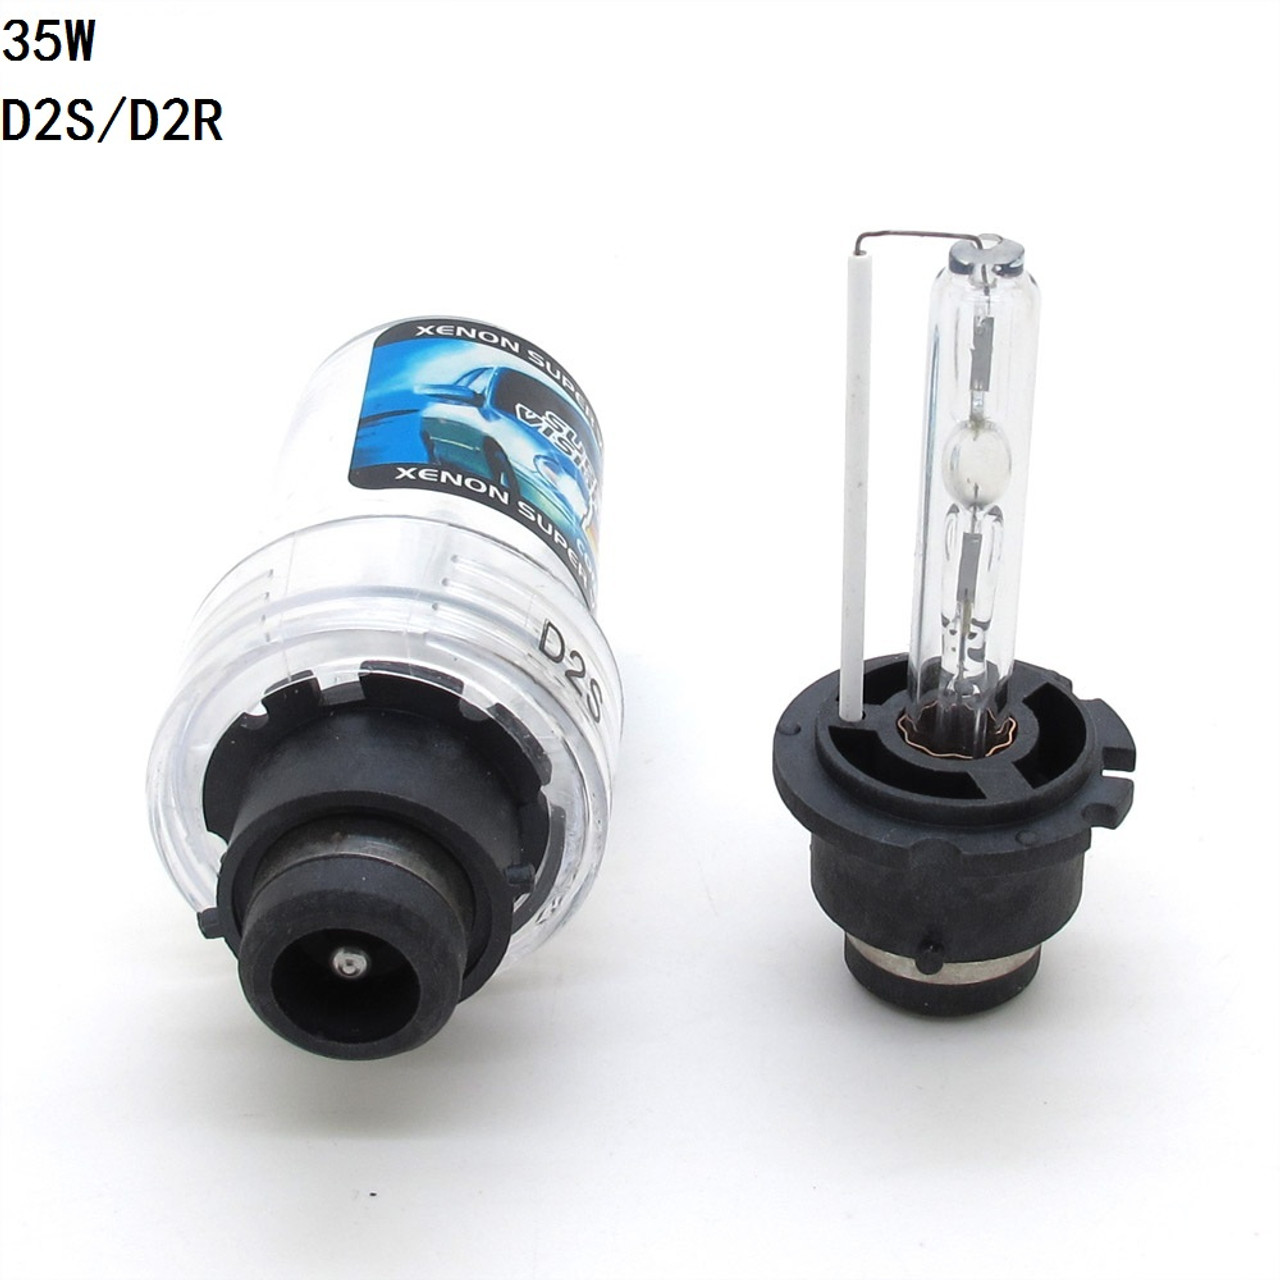 2x NEW Xenon D2S HID Bulbs 35W OEM Headlight Replacement Bulb 4K 6K 8K 10K  12K